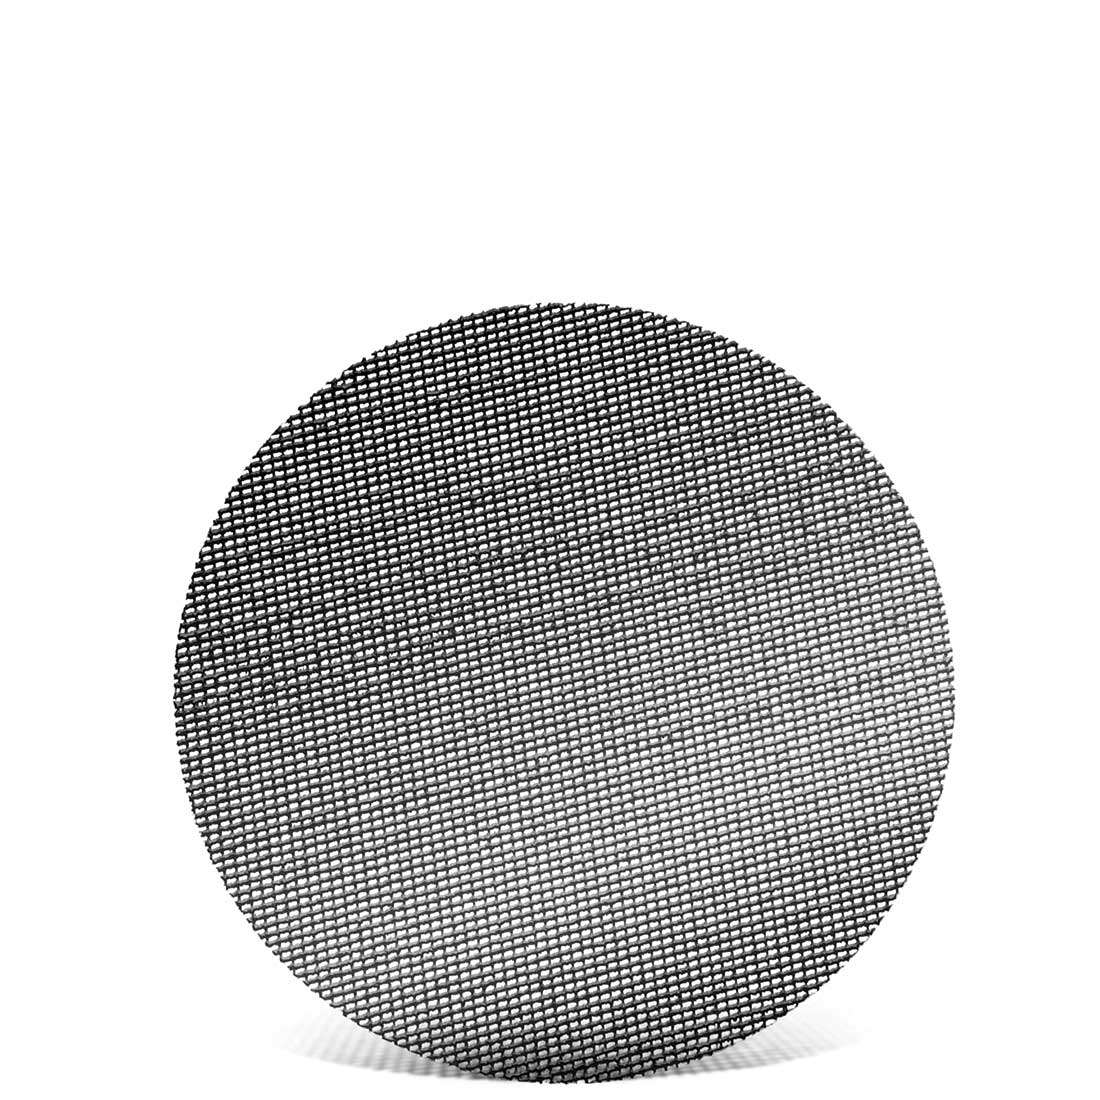 MENZER Klett-Schleifgitter für Trockenbauschleifer, K60–180, Ø 225 mm / Gitter / Siliciumcarbid